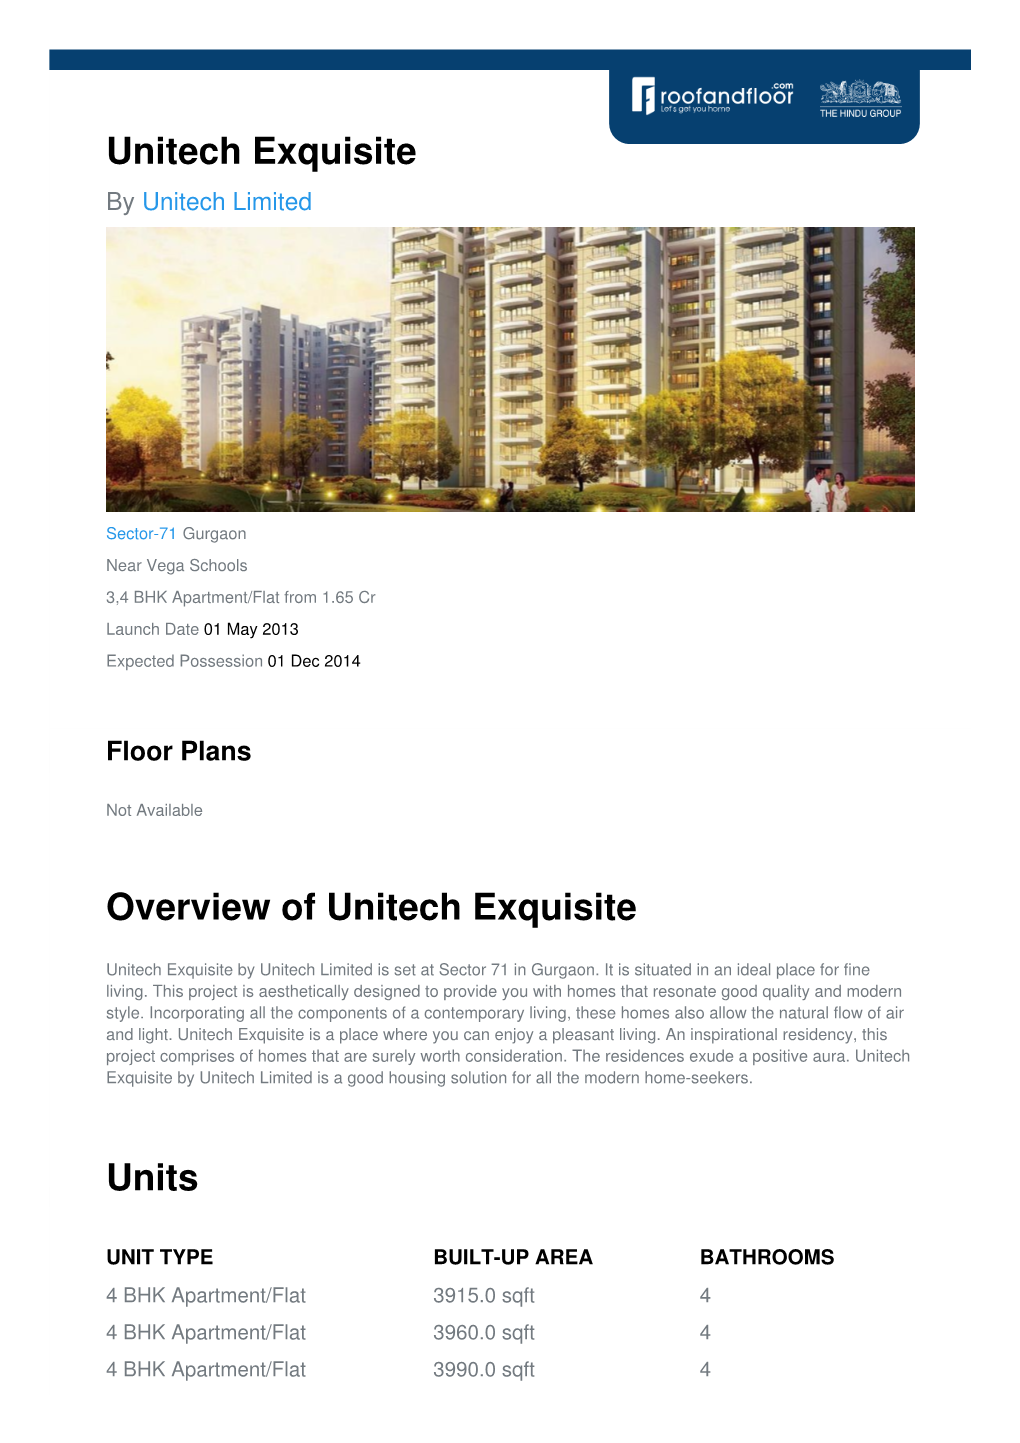 Unitech Exquisite by Unitech Limited